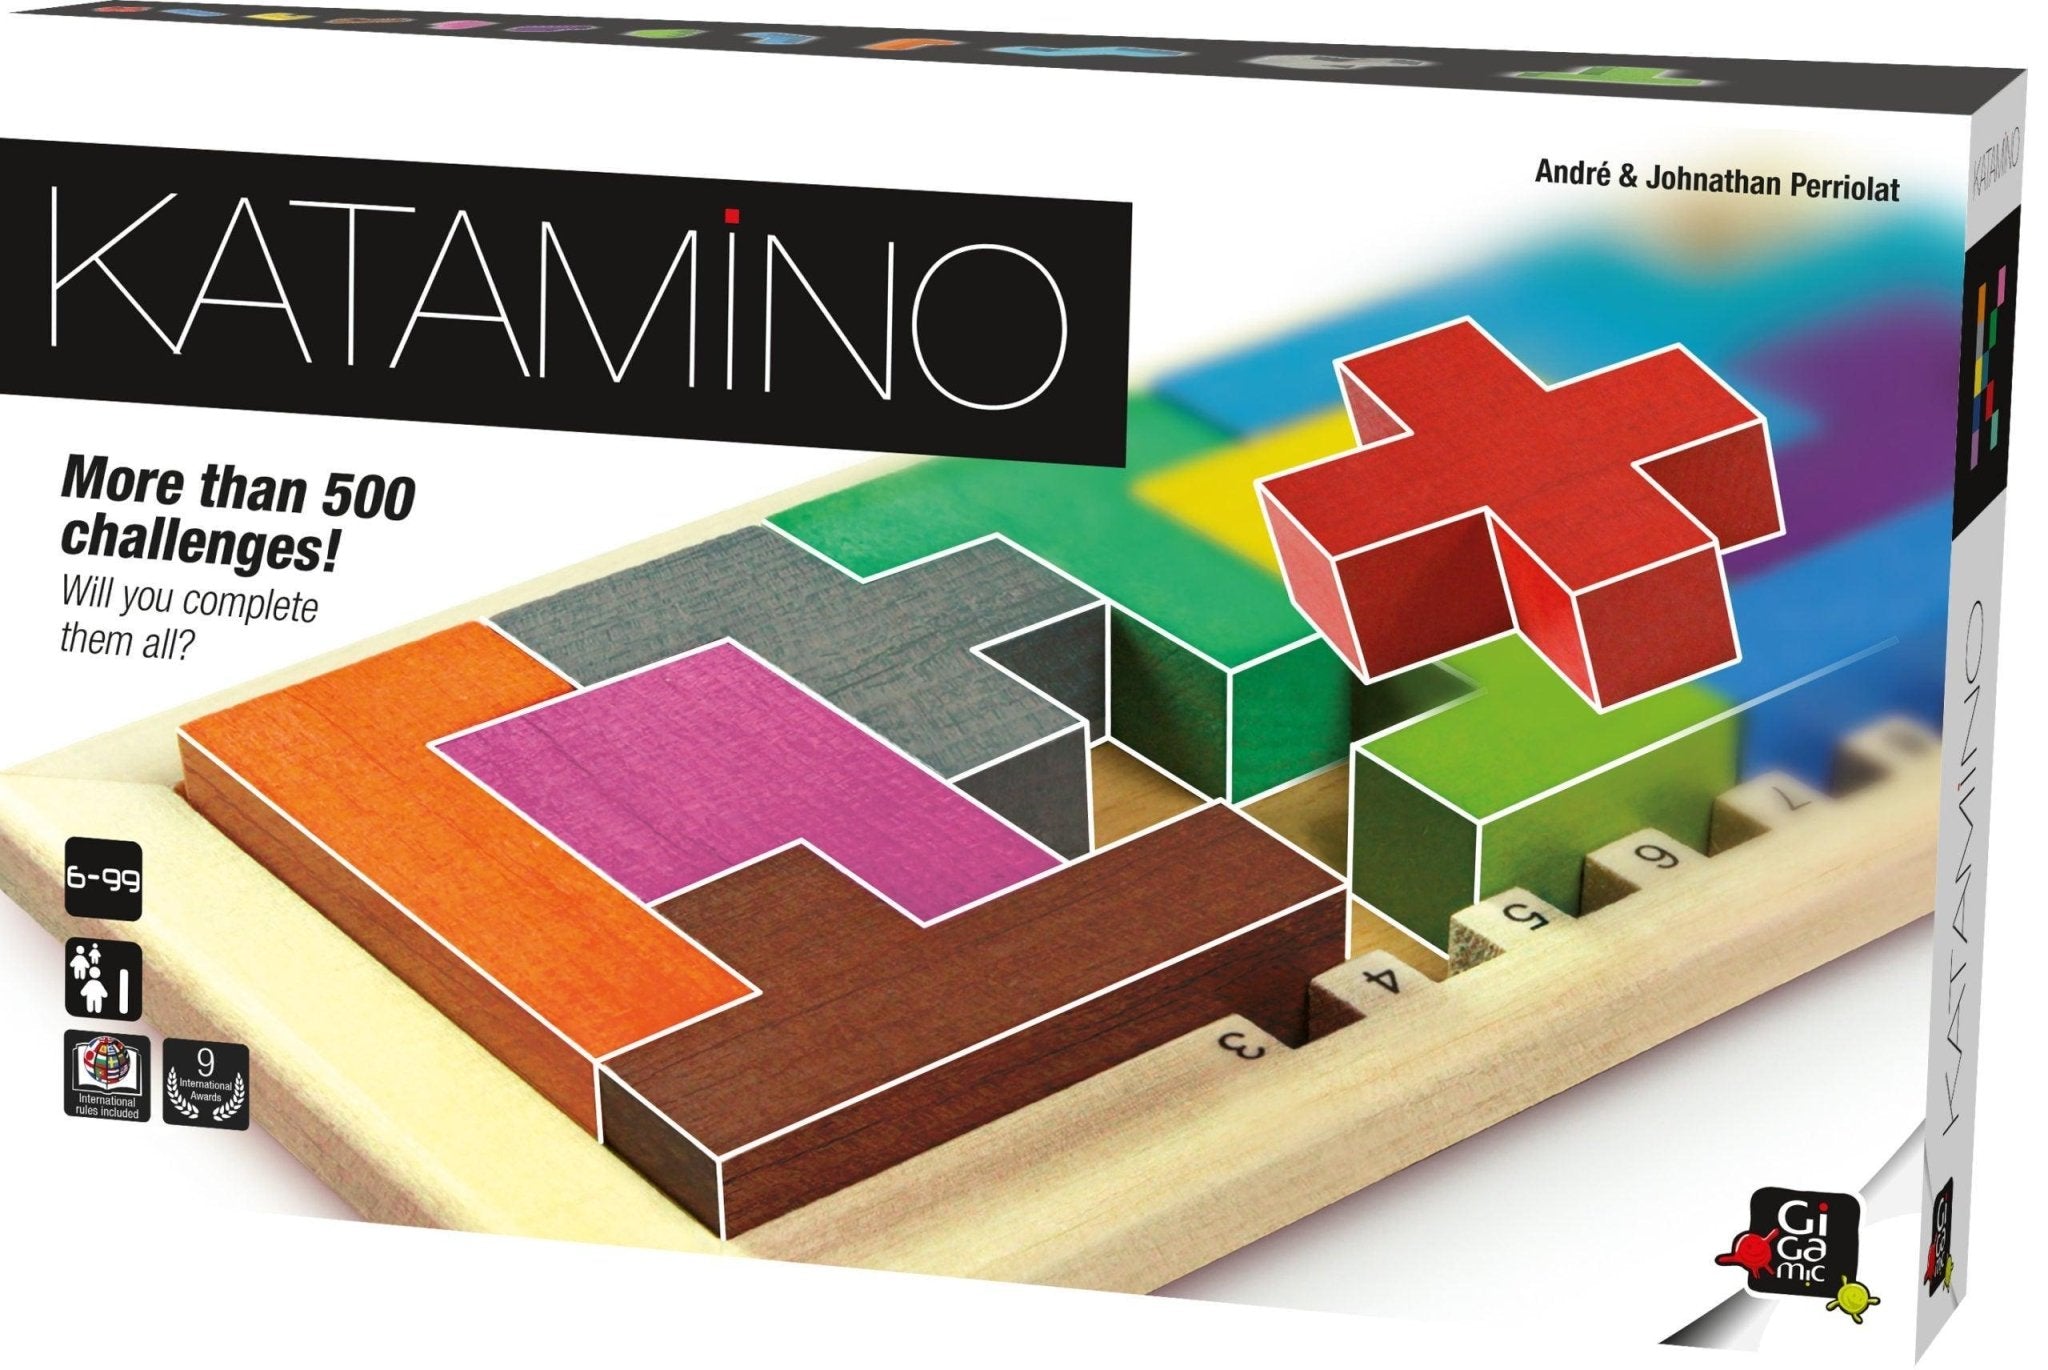 Katamino - Gaming Library